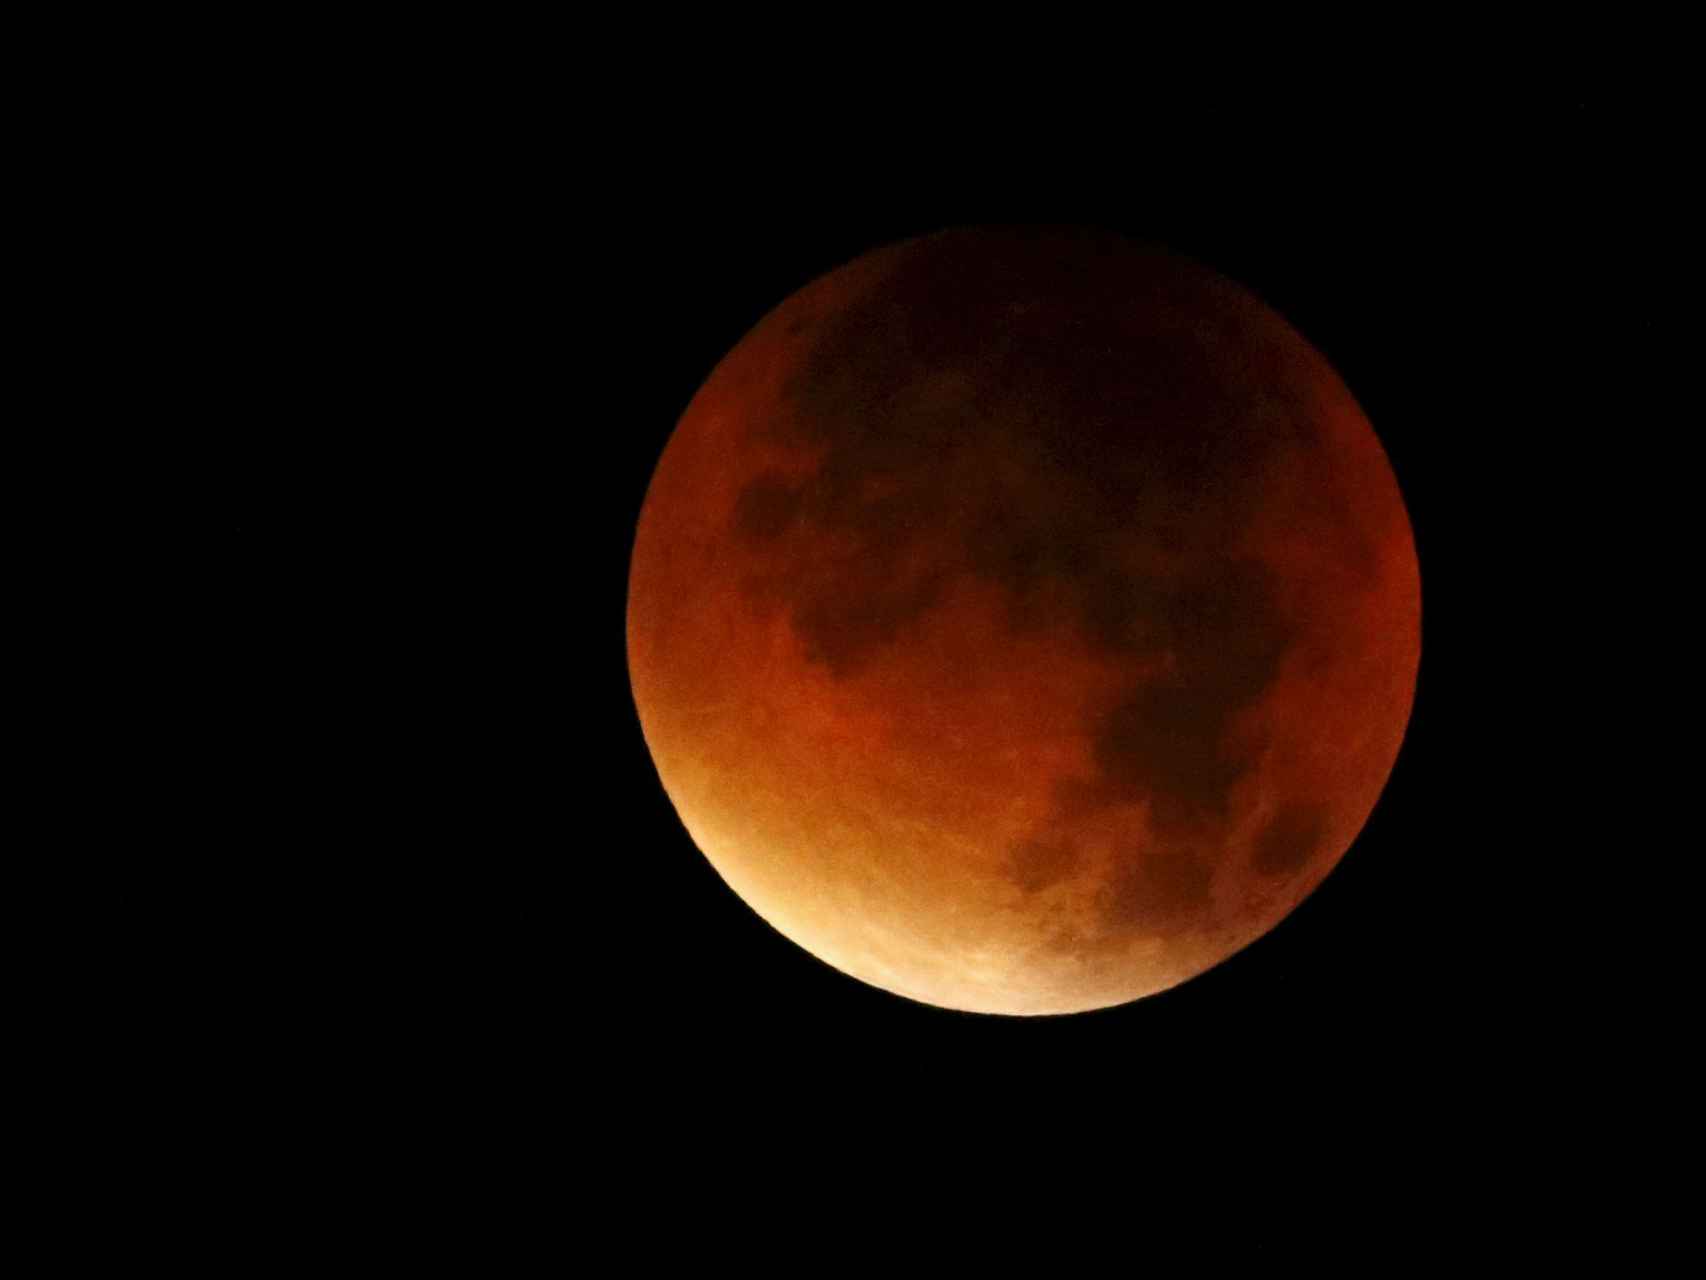 Así ha sido fotografiada la luna durante su espectacular eclipse en Colmar, Francia.